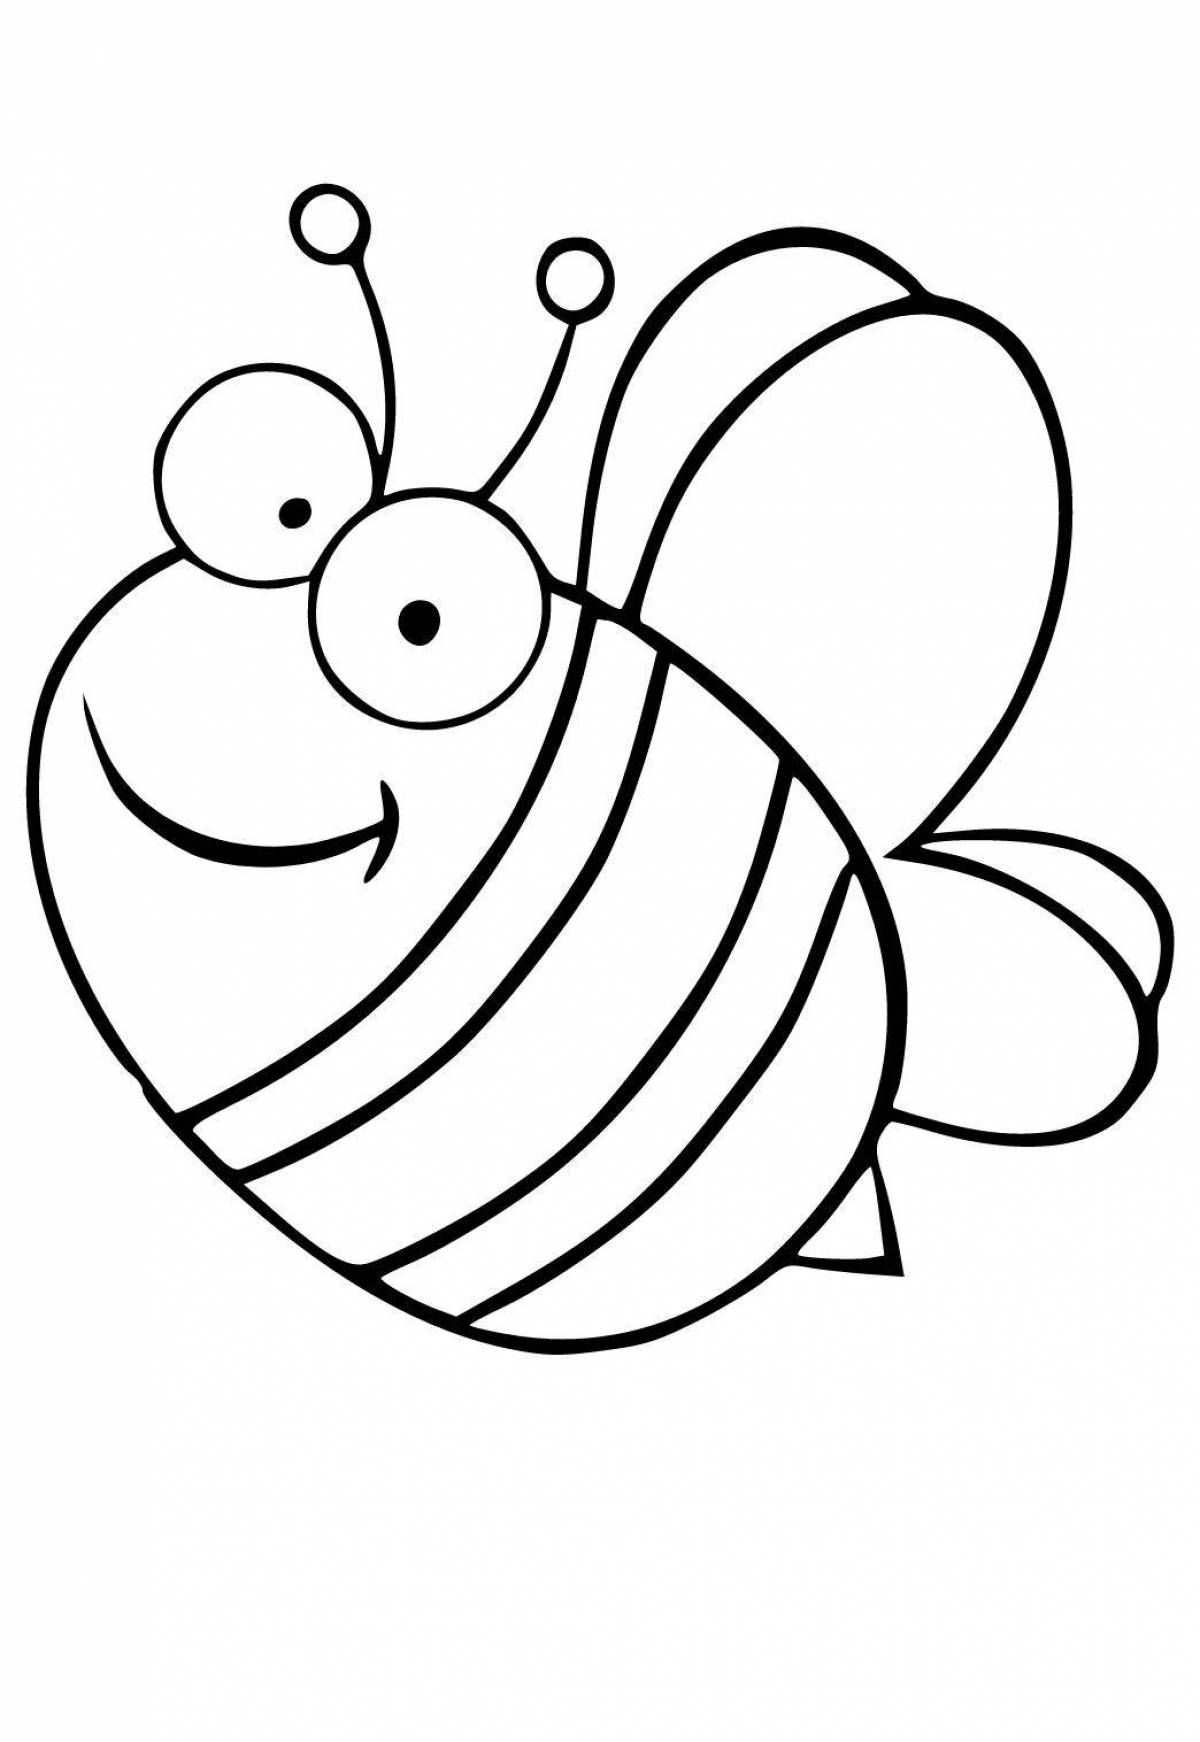 Веселая раскраска пчелы для детей 3-4 лет